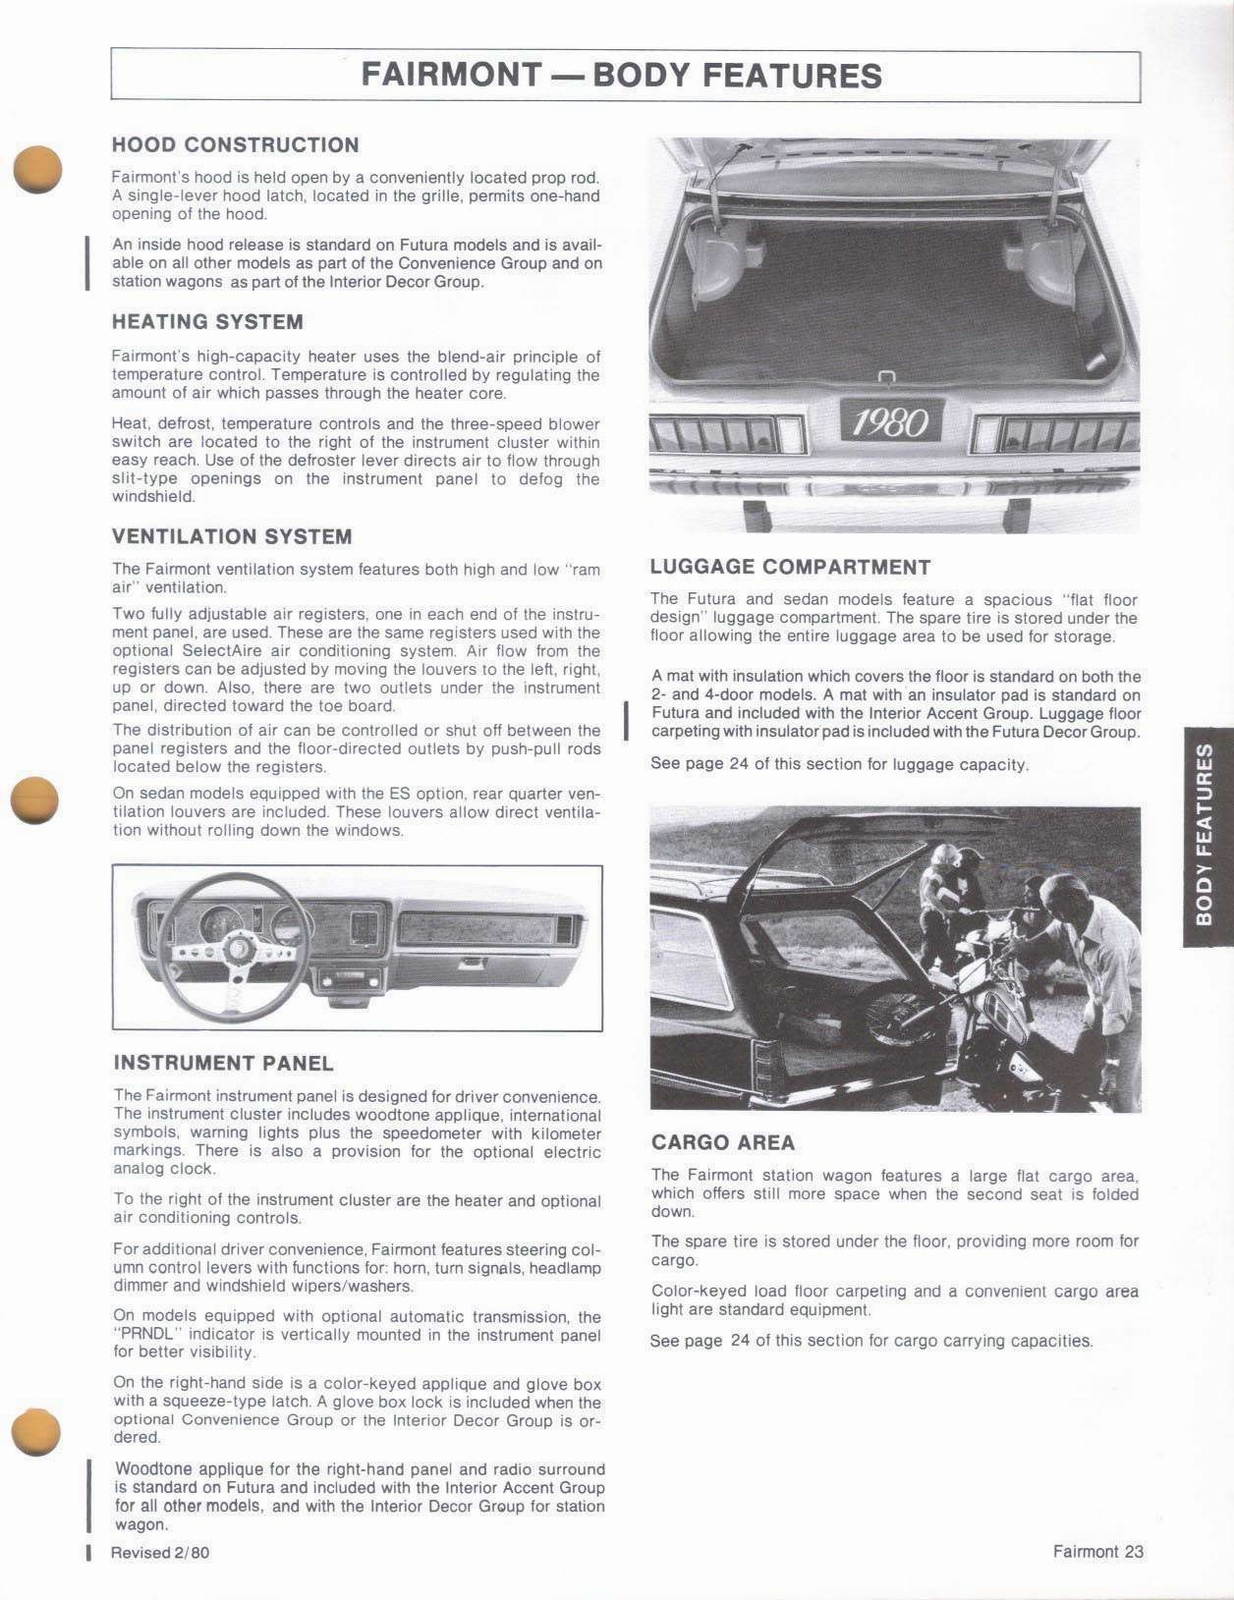 n_1980 Ford Fairmont Car Facts-23.jpg